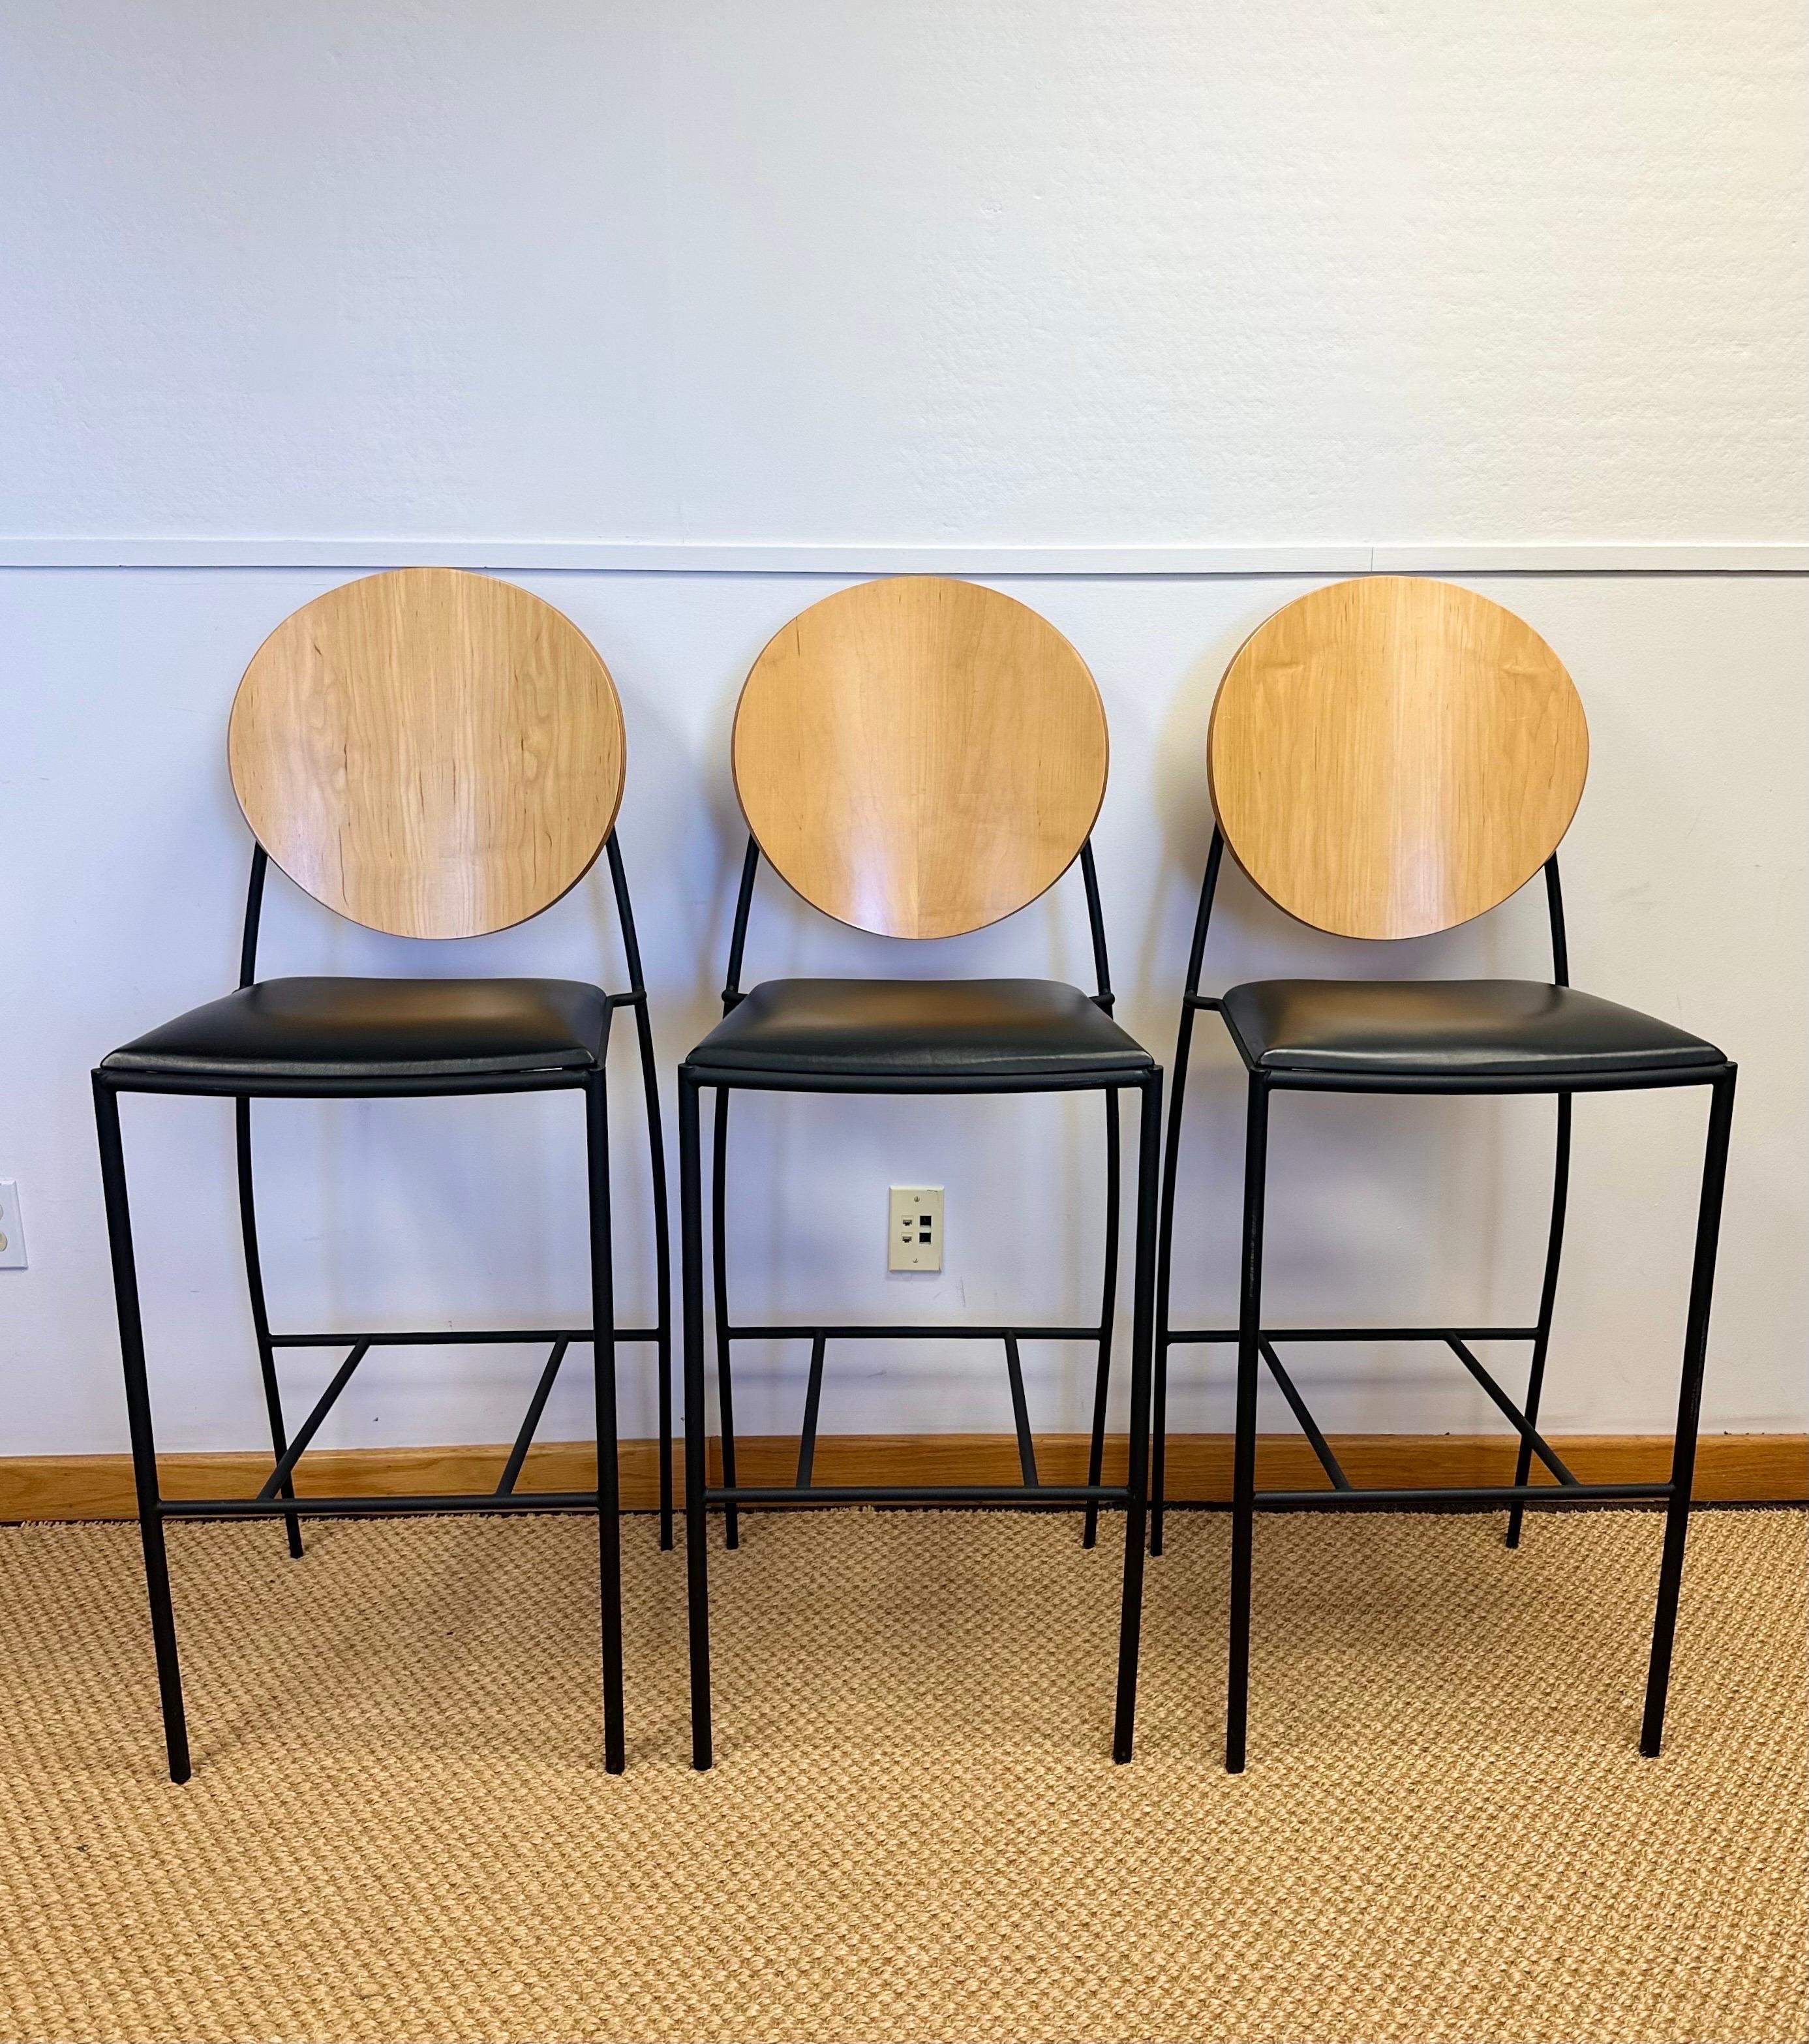 Nous avons le plaisir de vous proposer un ensemble de trois tabourets de comptoir de bar du célèbre designer de meubles américain Dakota Jackson, vers les années 1990. Il a commencé sa carrière dans les années 1960 et s'est fait connaître pour son